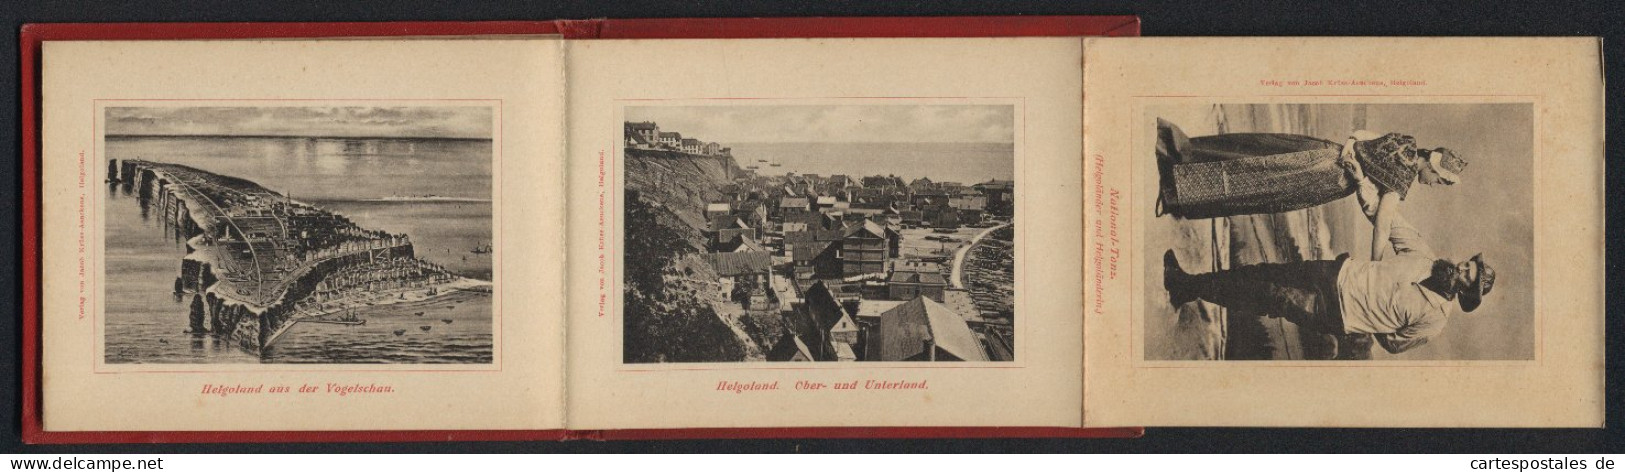 Leporello-Album Helgoland Mit 12 Lichdruck-Ansichten, Helgoländer In Tracht, Ober- Und Unterland, Fahrstuhl, Mönch  - Lithographien